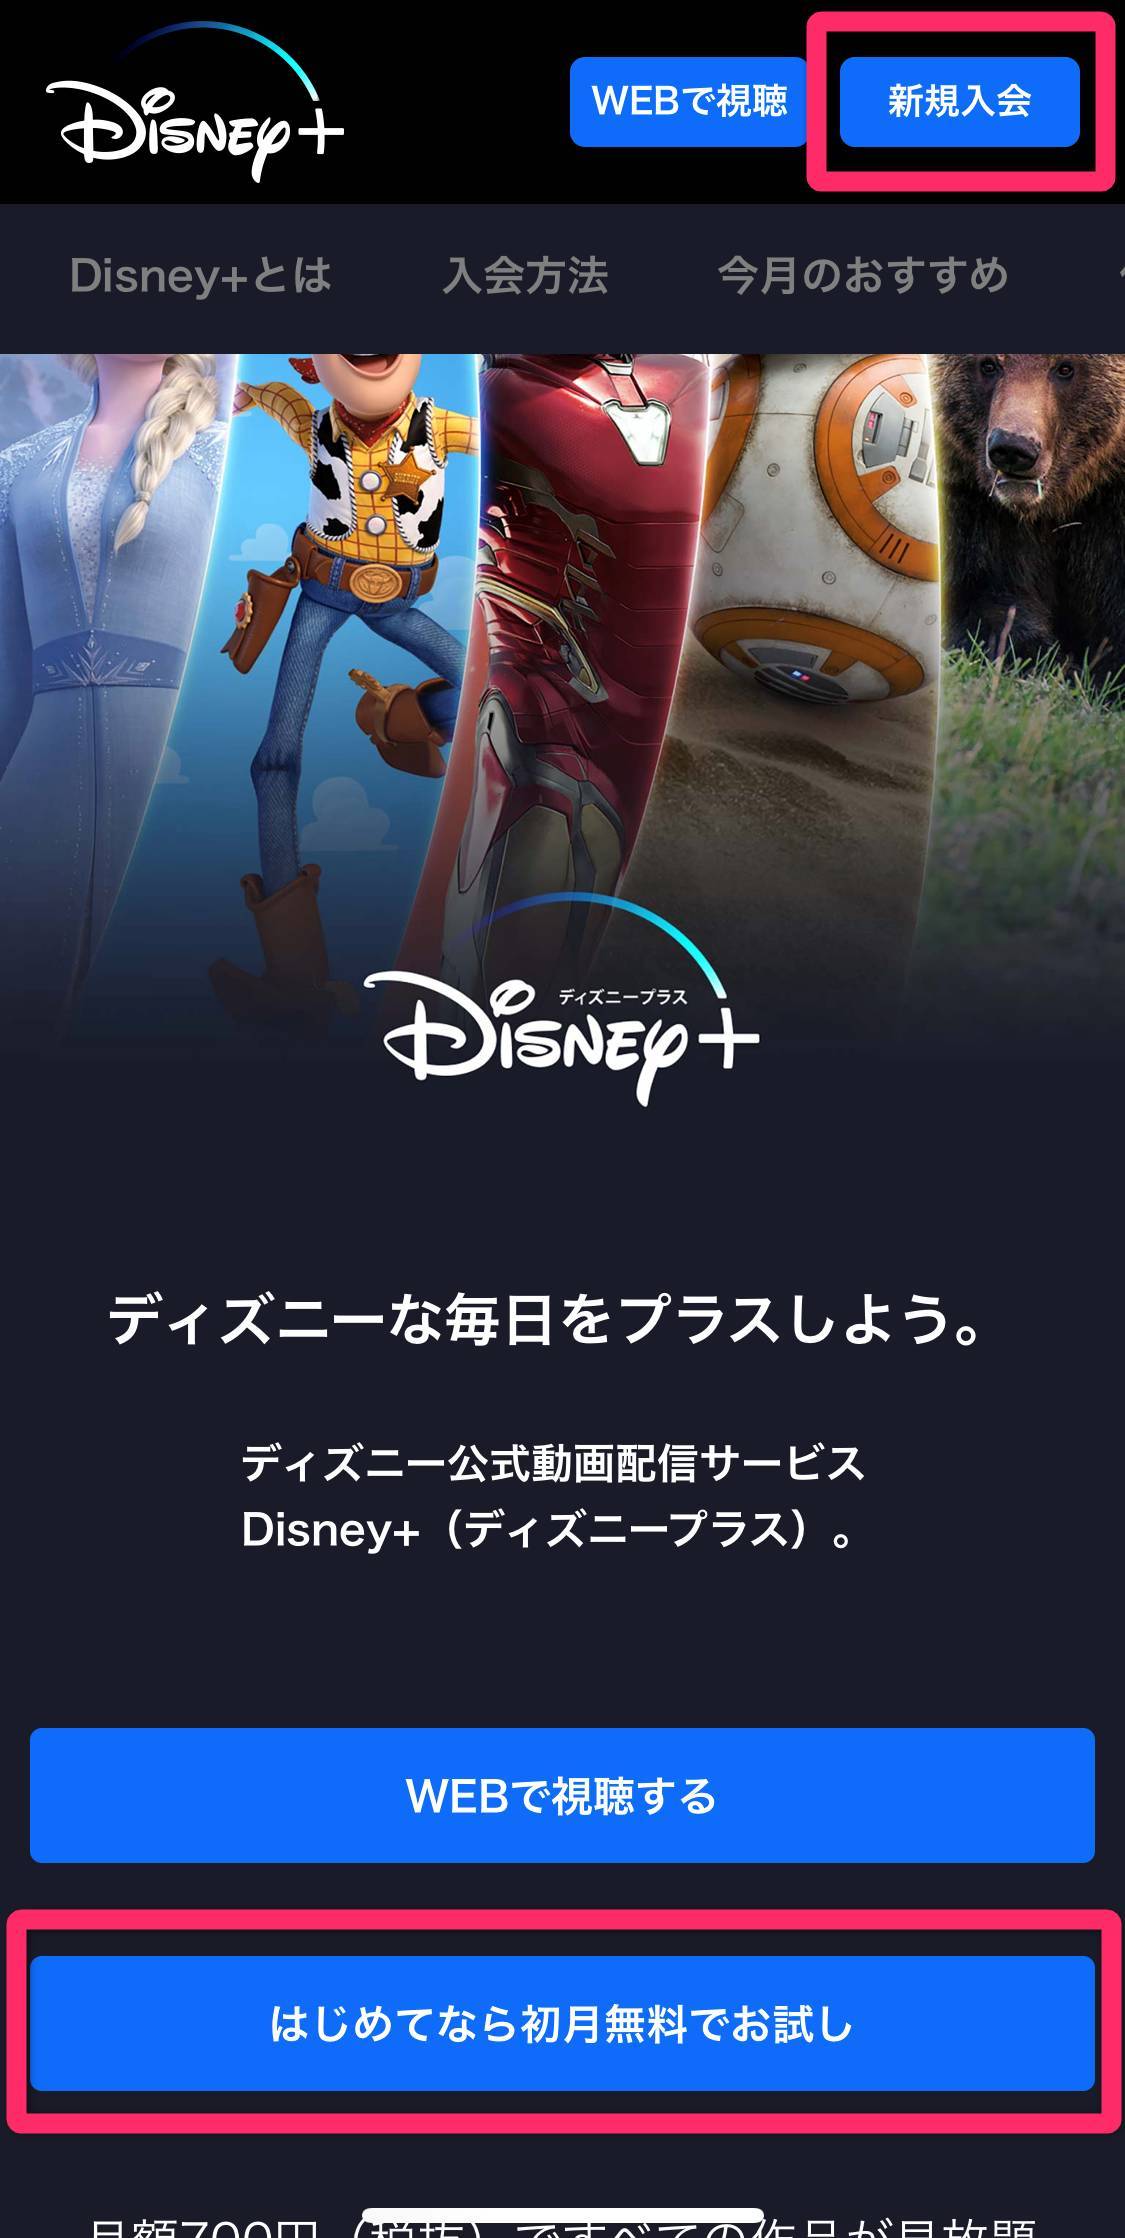 Disney ディズニープラス 登録 入会方法 Dアカウントの作成から徹底解説 Appliv Topics